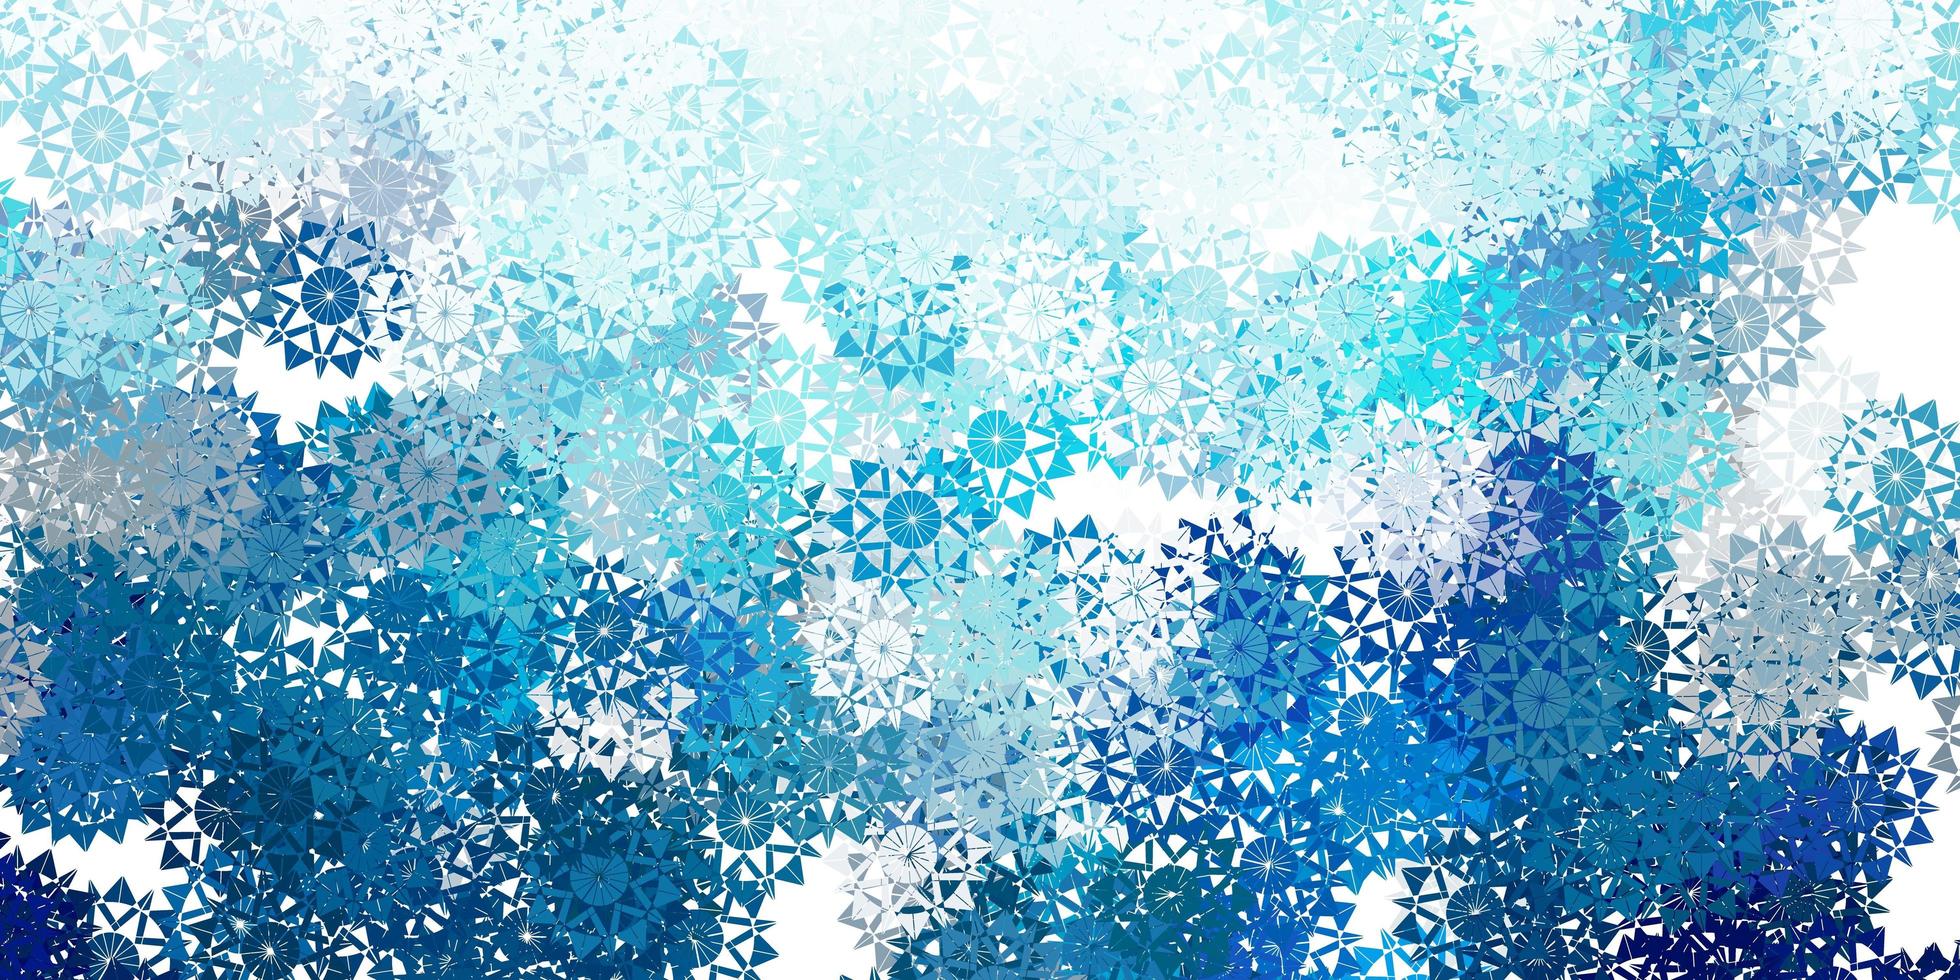 texture de vecteur bleu clair avec des flocons de neige lumineux.